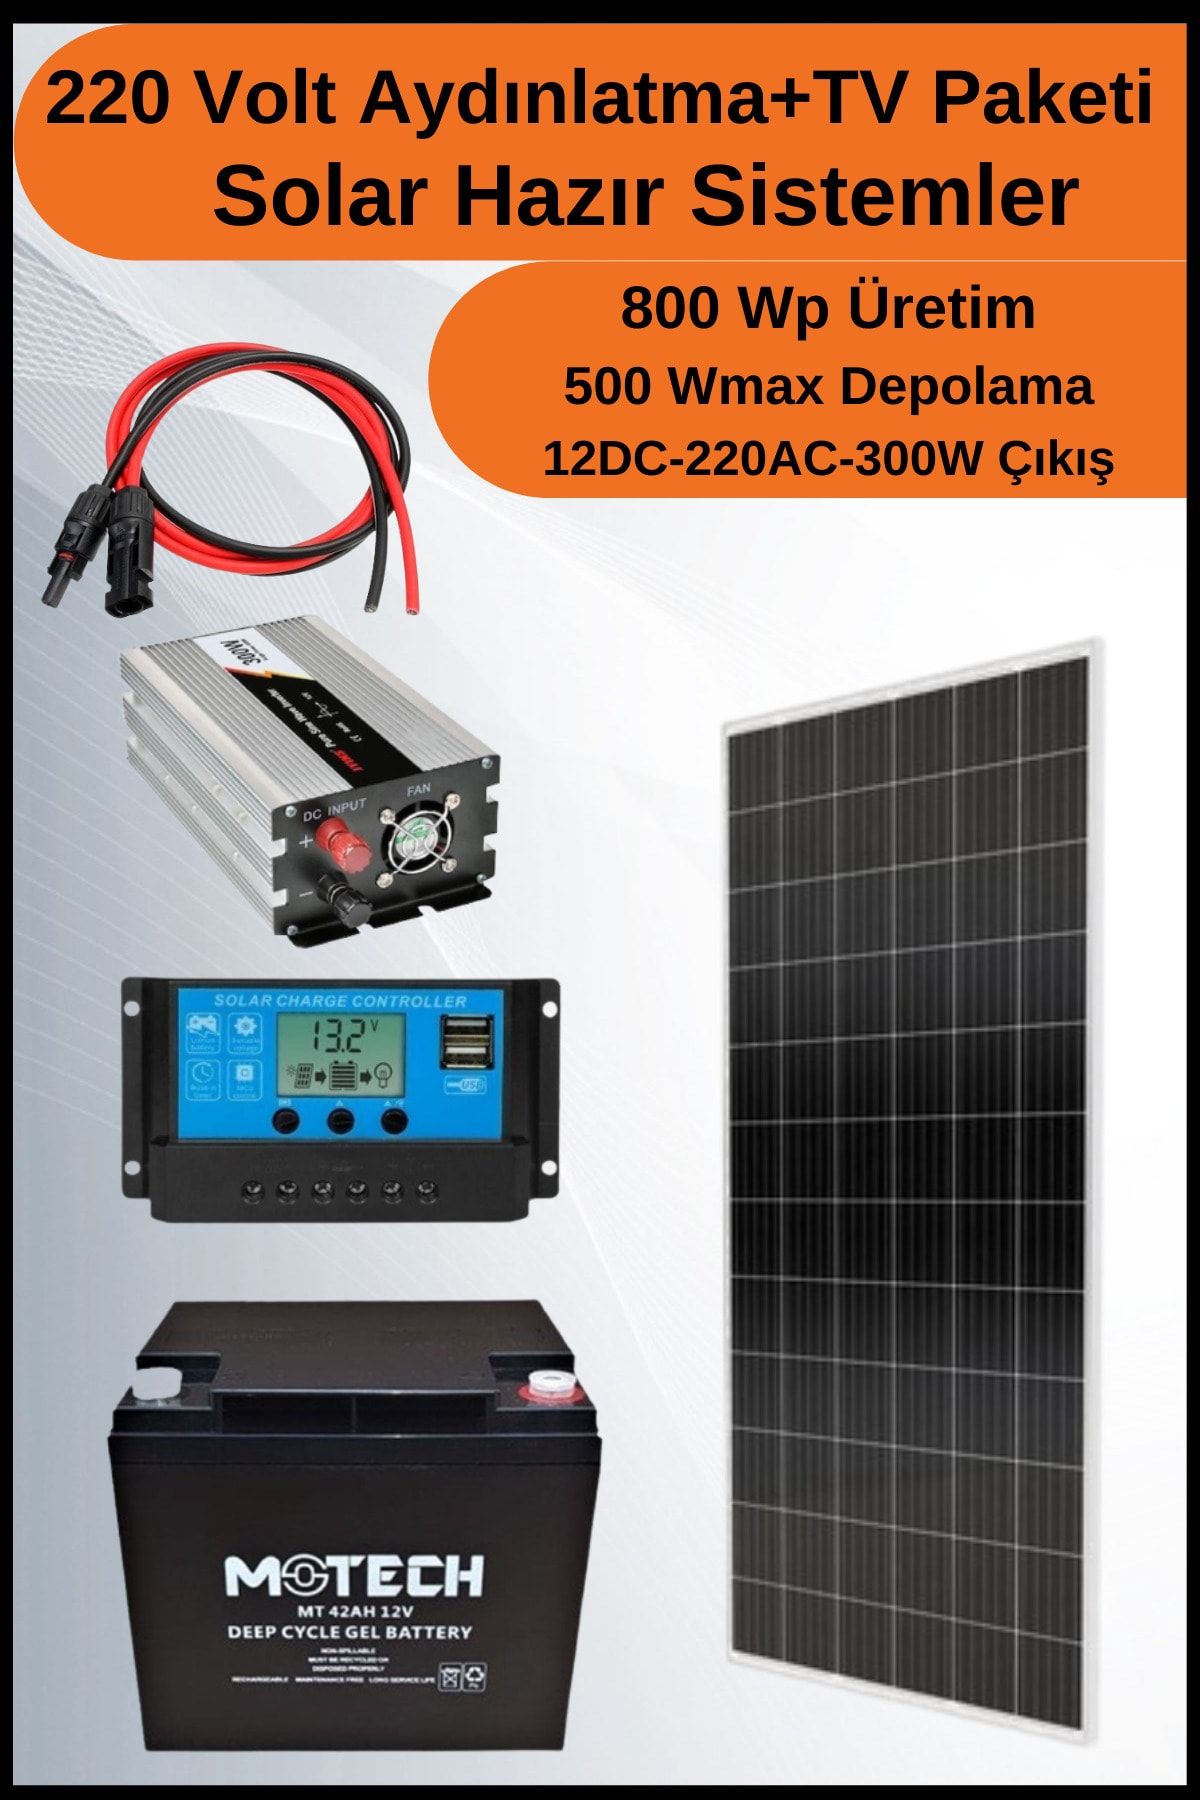 N&D Lighting Tv+aydınlatma Short Mono Solar Paket 220 Volt-800wp